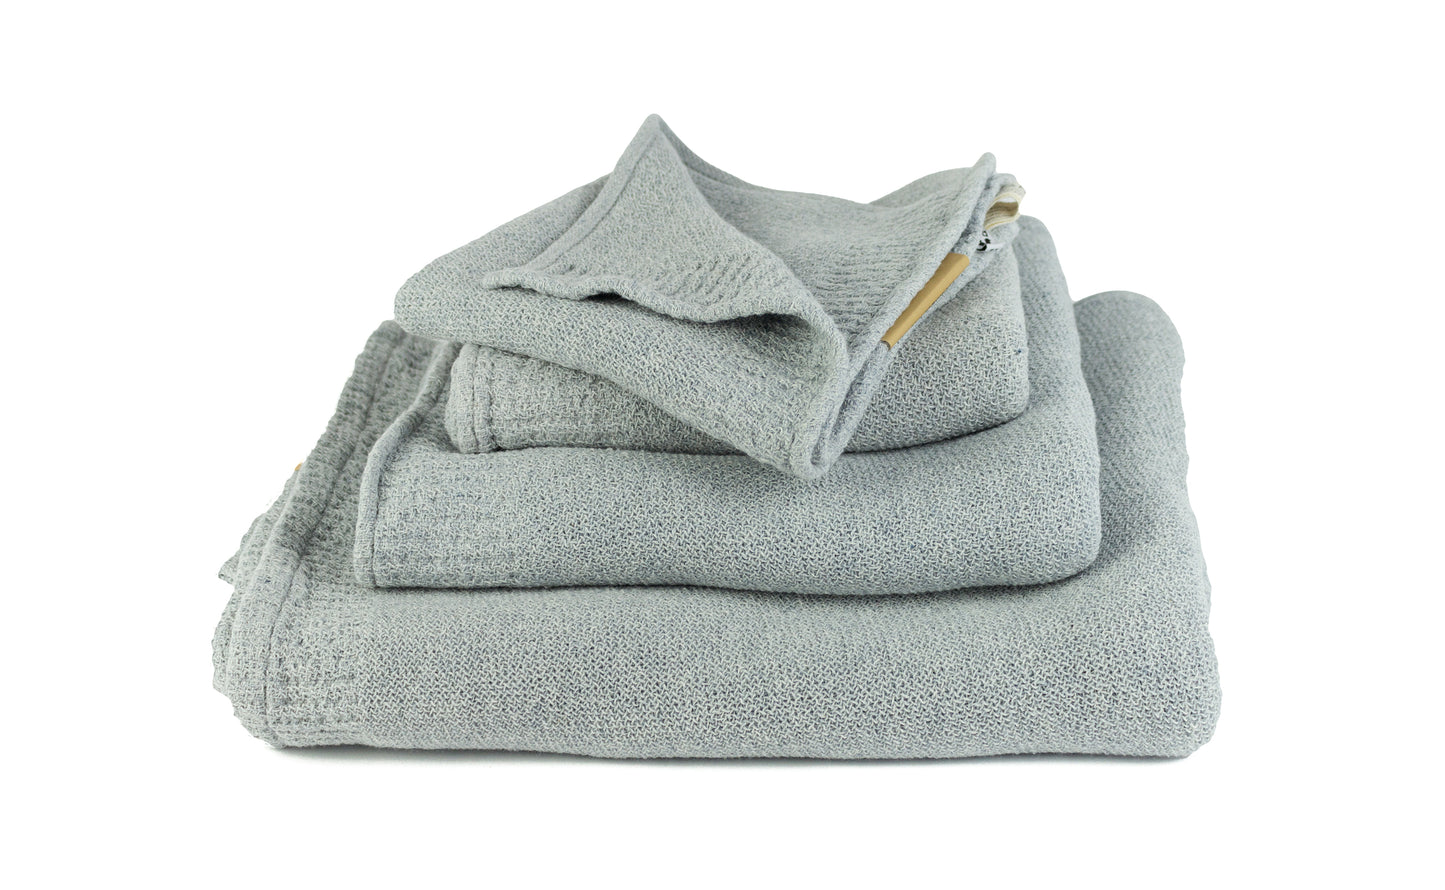 Re.Lana blaugrau – Handtuch aus recycelter Baumwolle